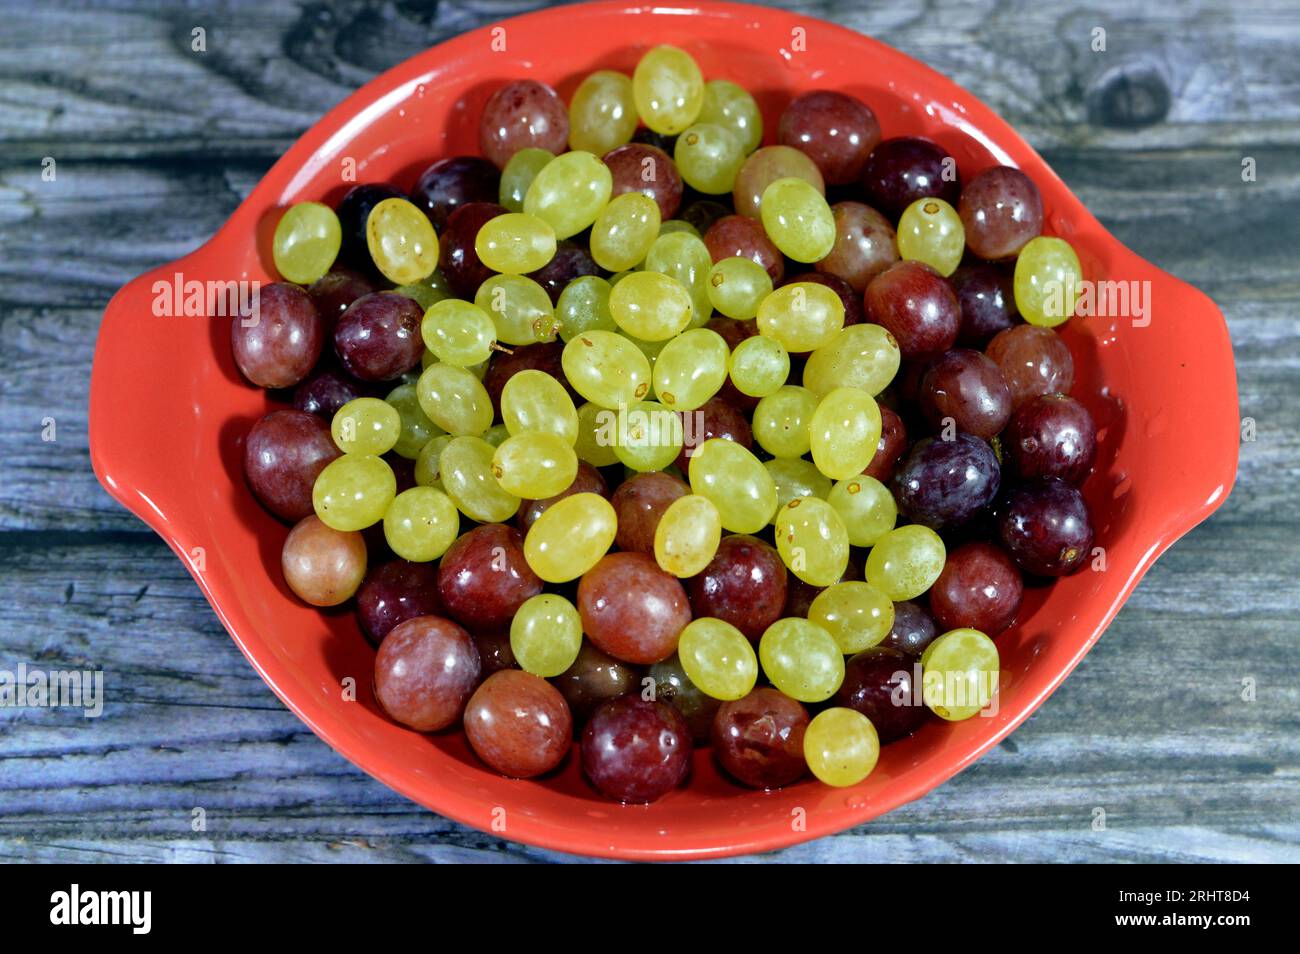 Grüne und rote frische Trauben, eine Frucht, botanisch eine Beere der Laubwaldreben der blühenden Pflanzengattung Vitis. Die Trauben sind nicht klimakterisch Stockfoto